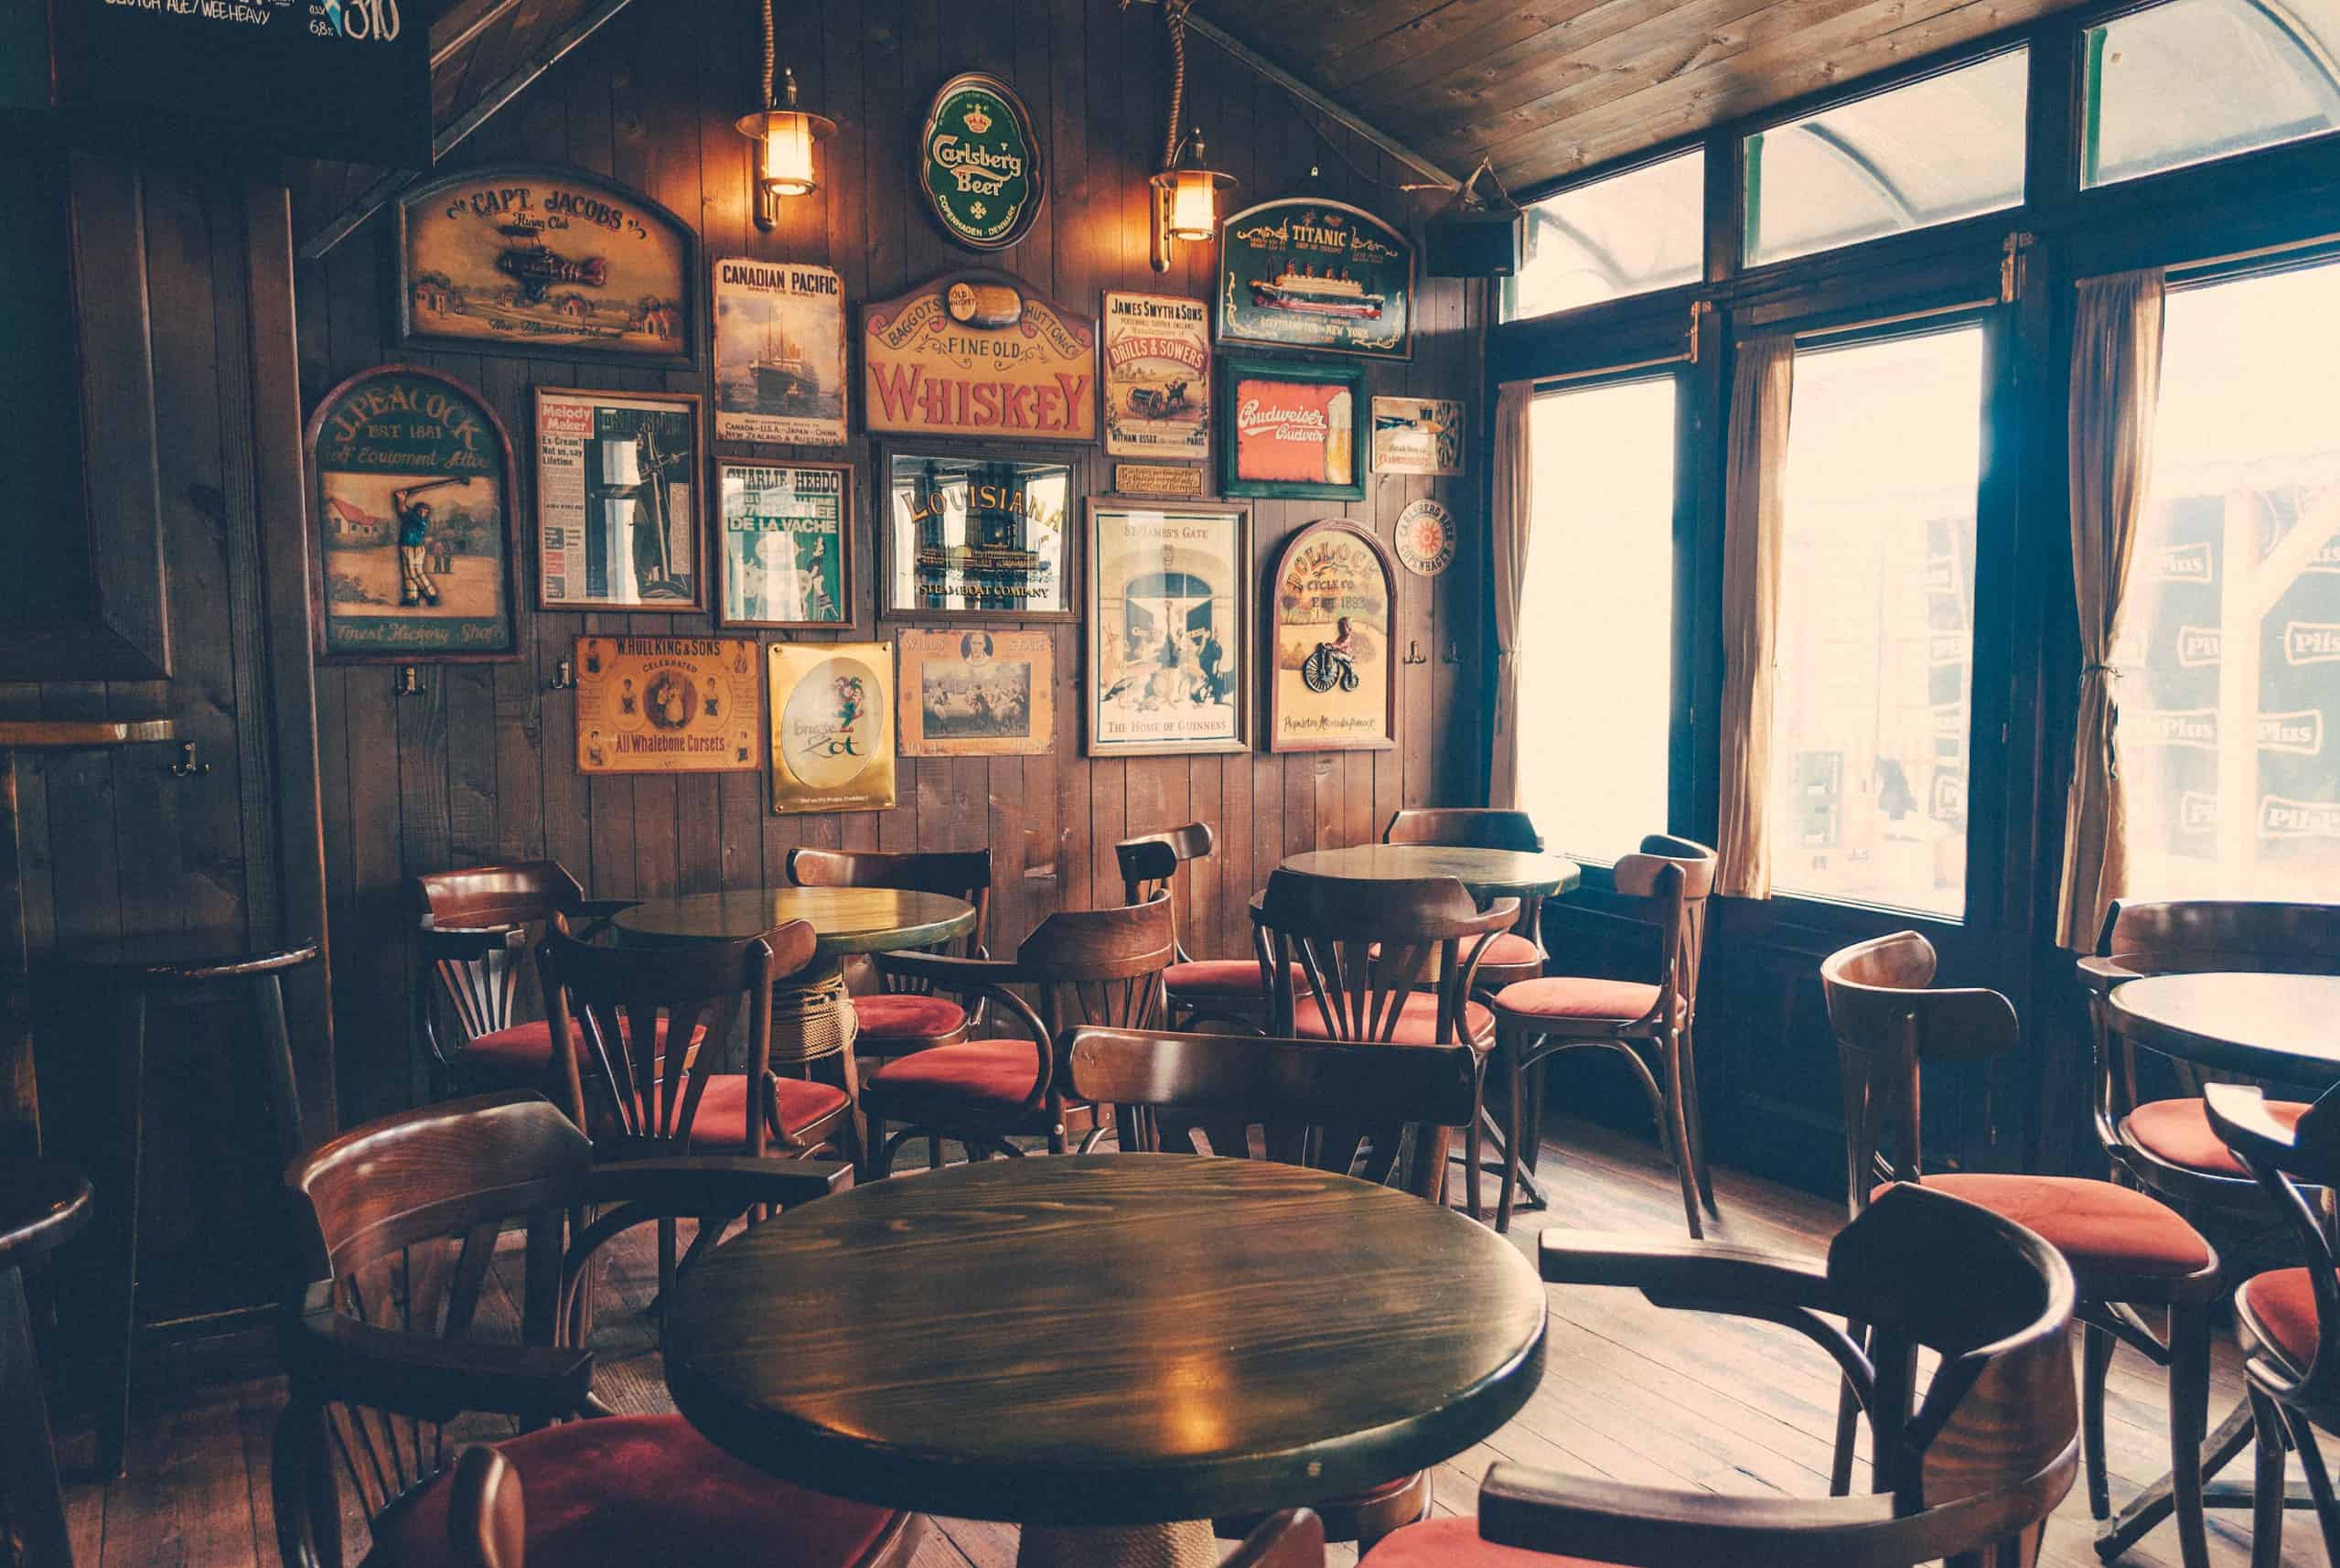 Rustic pub interior